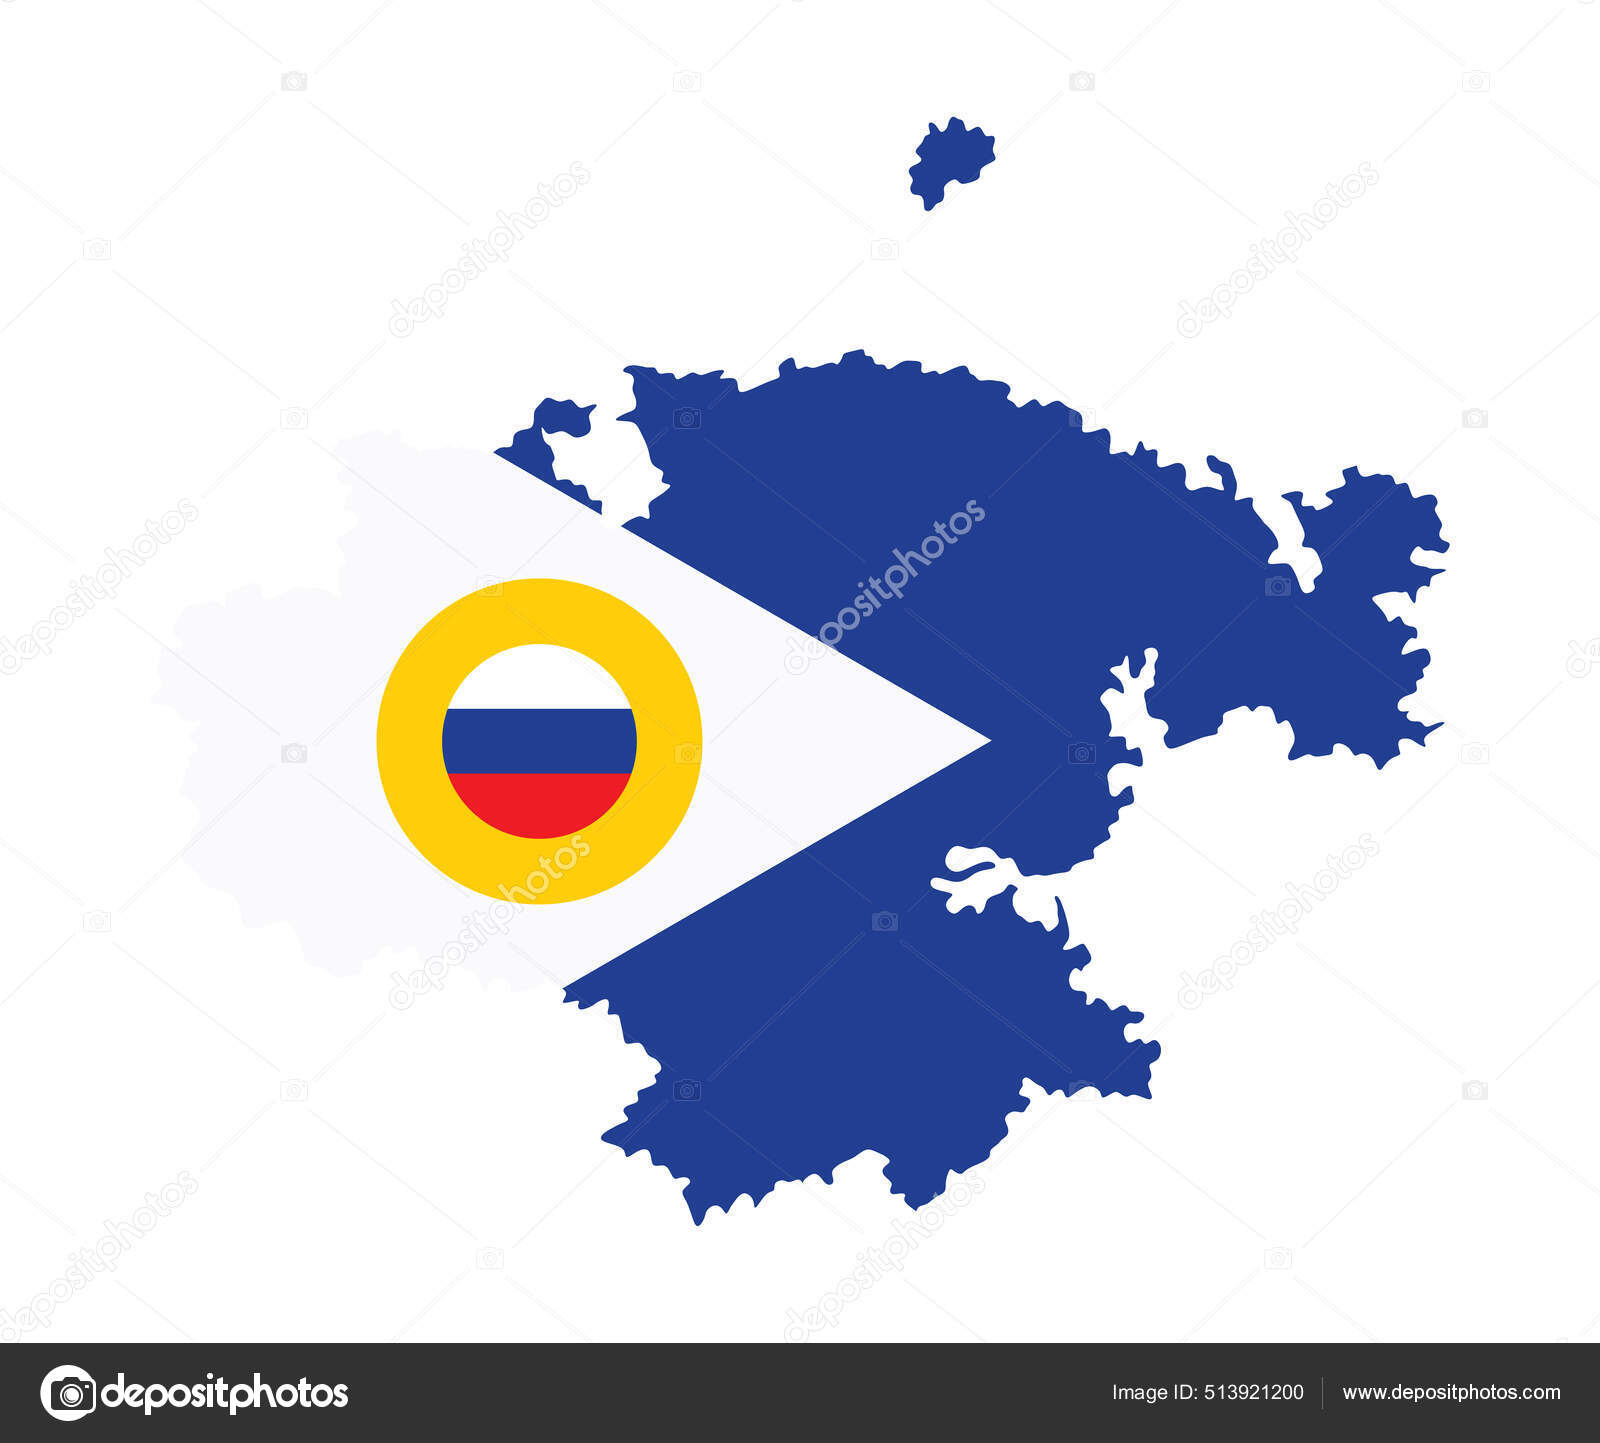 Mapa Da Bandeira Da Rússia. Mapa Da Federação Russa Com A Bandeira